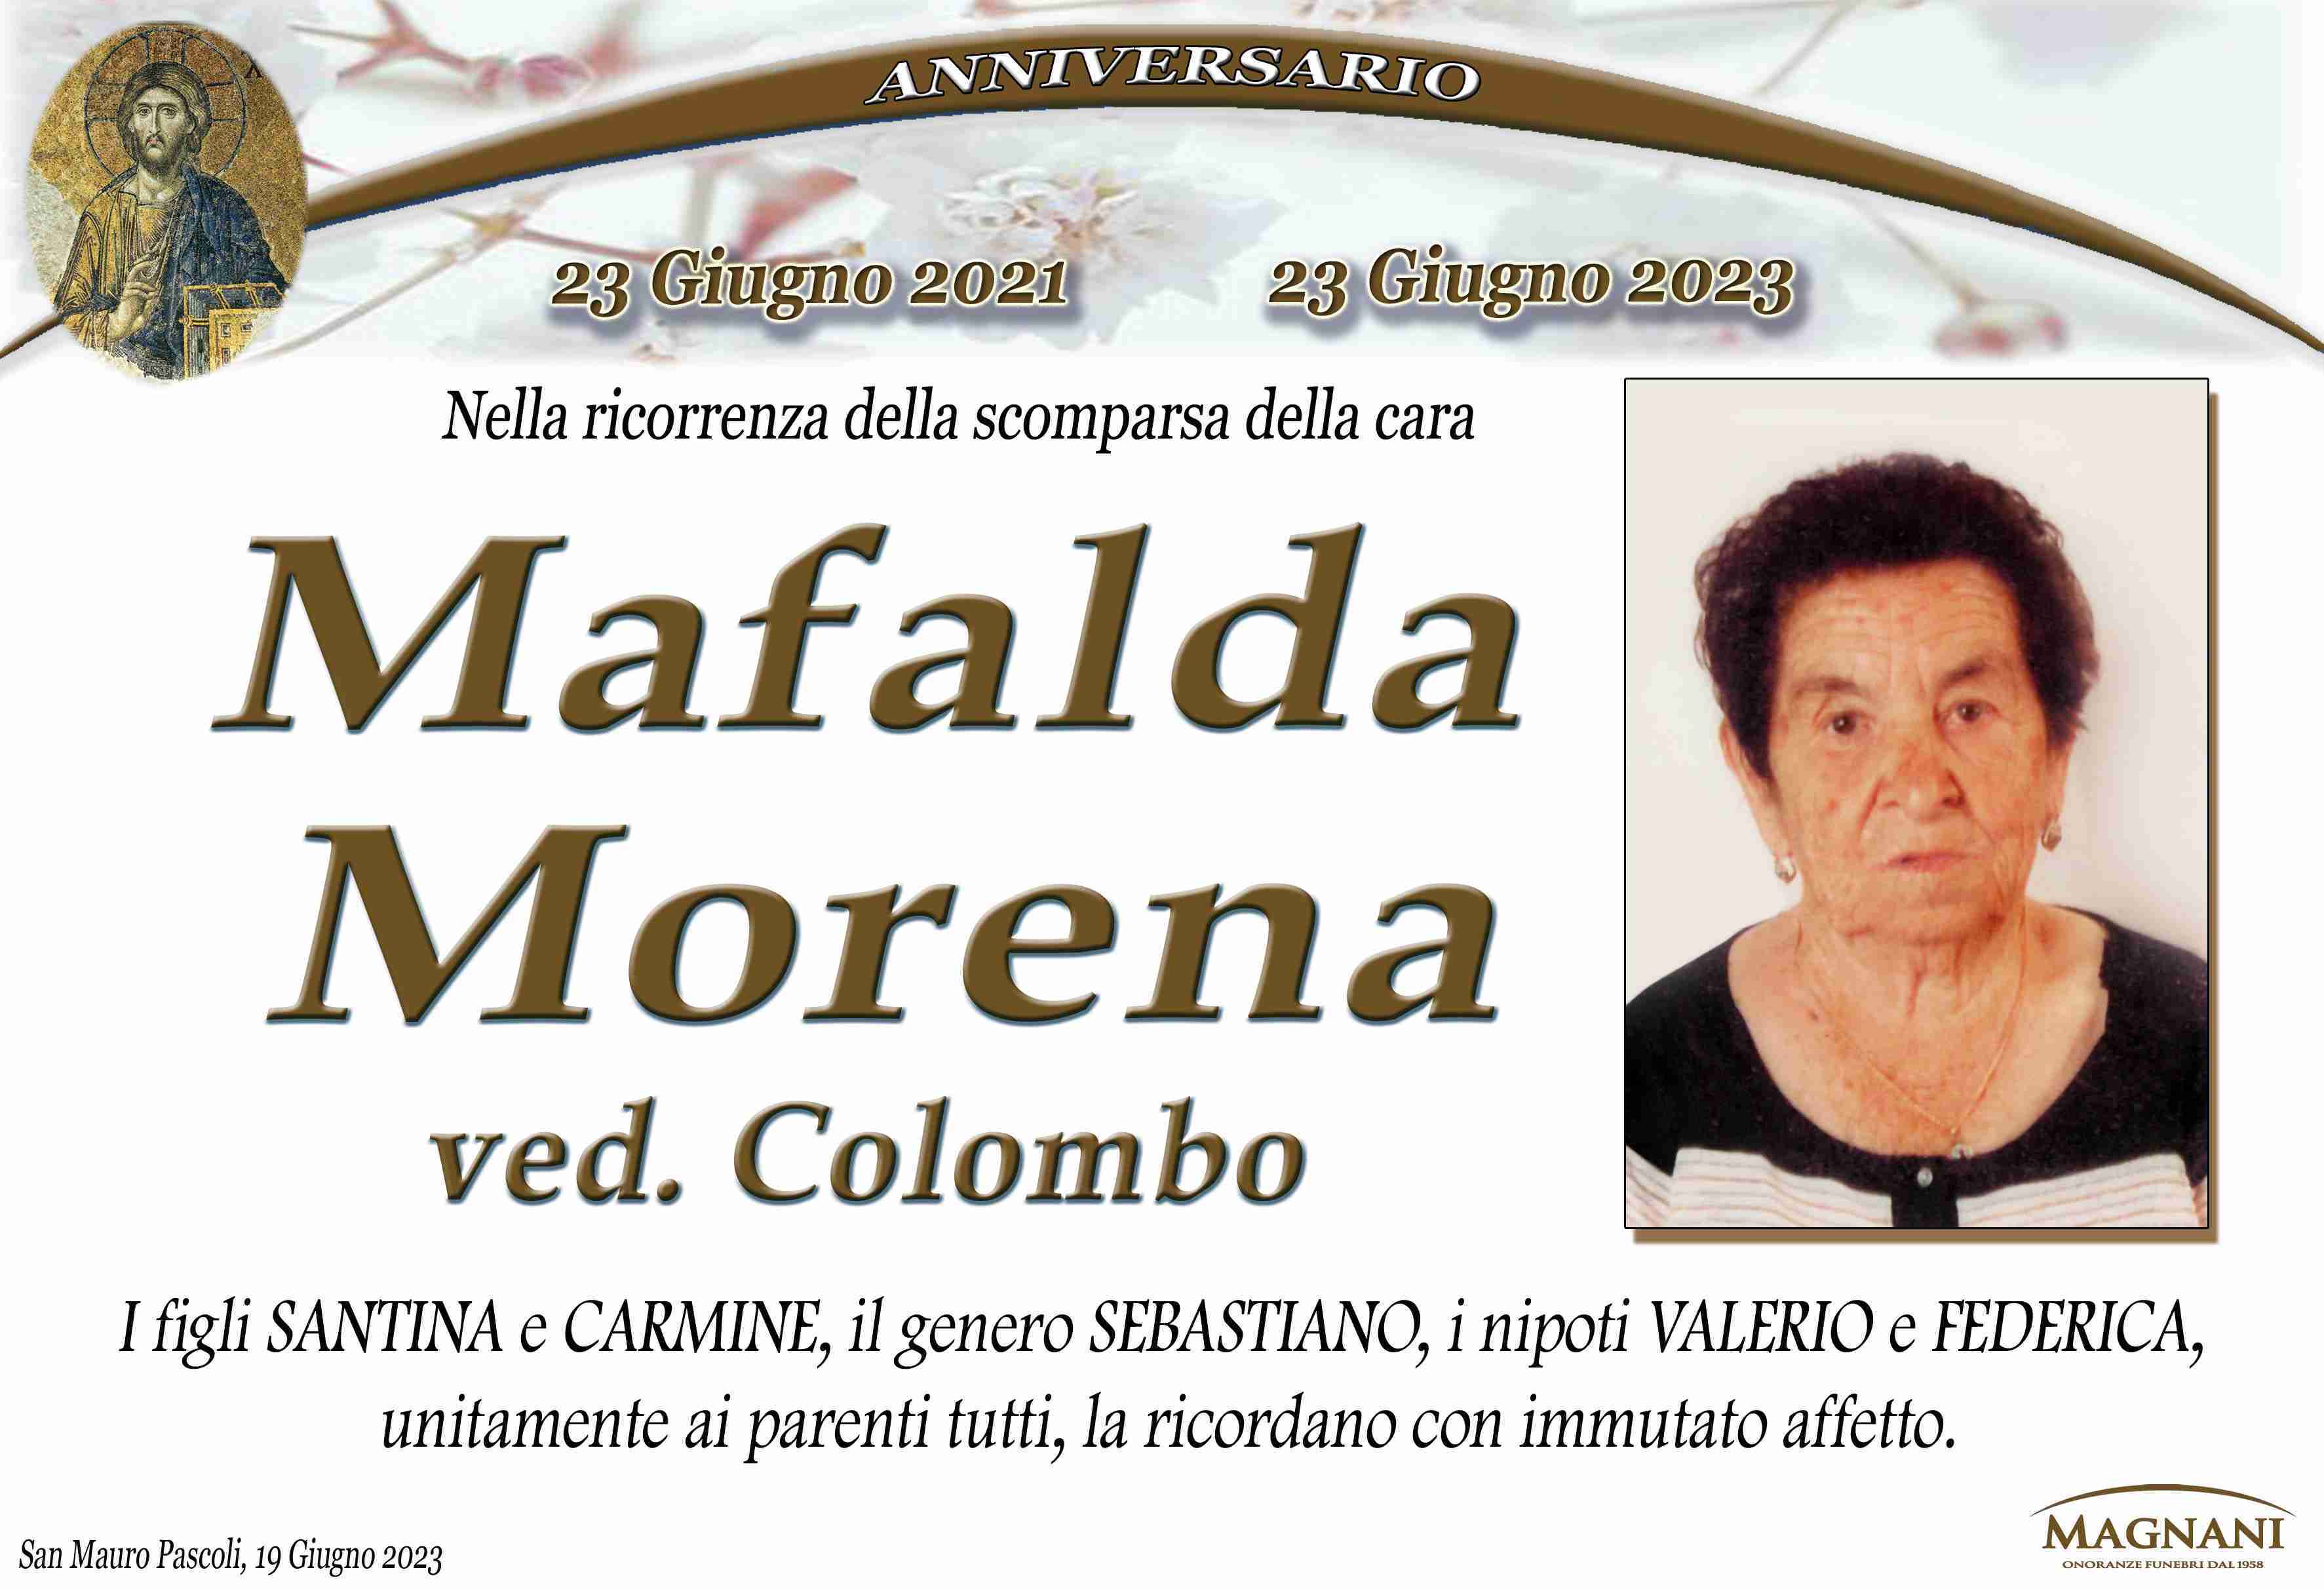 Mafalda Morena